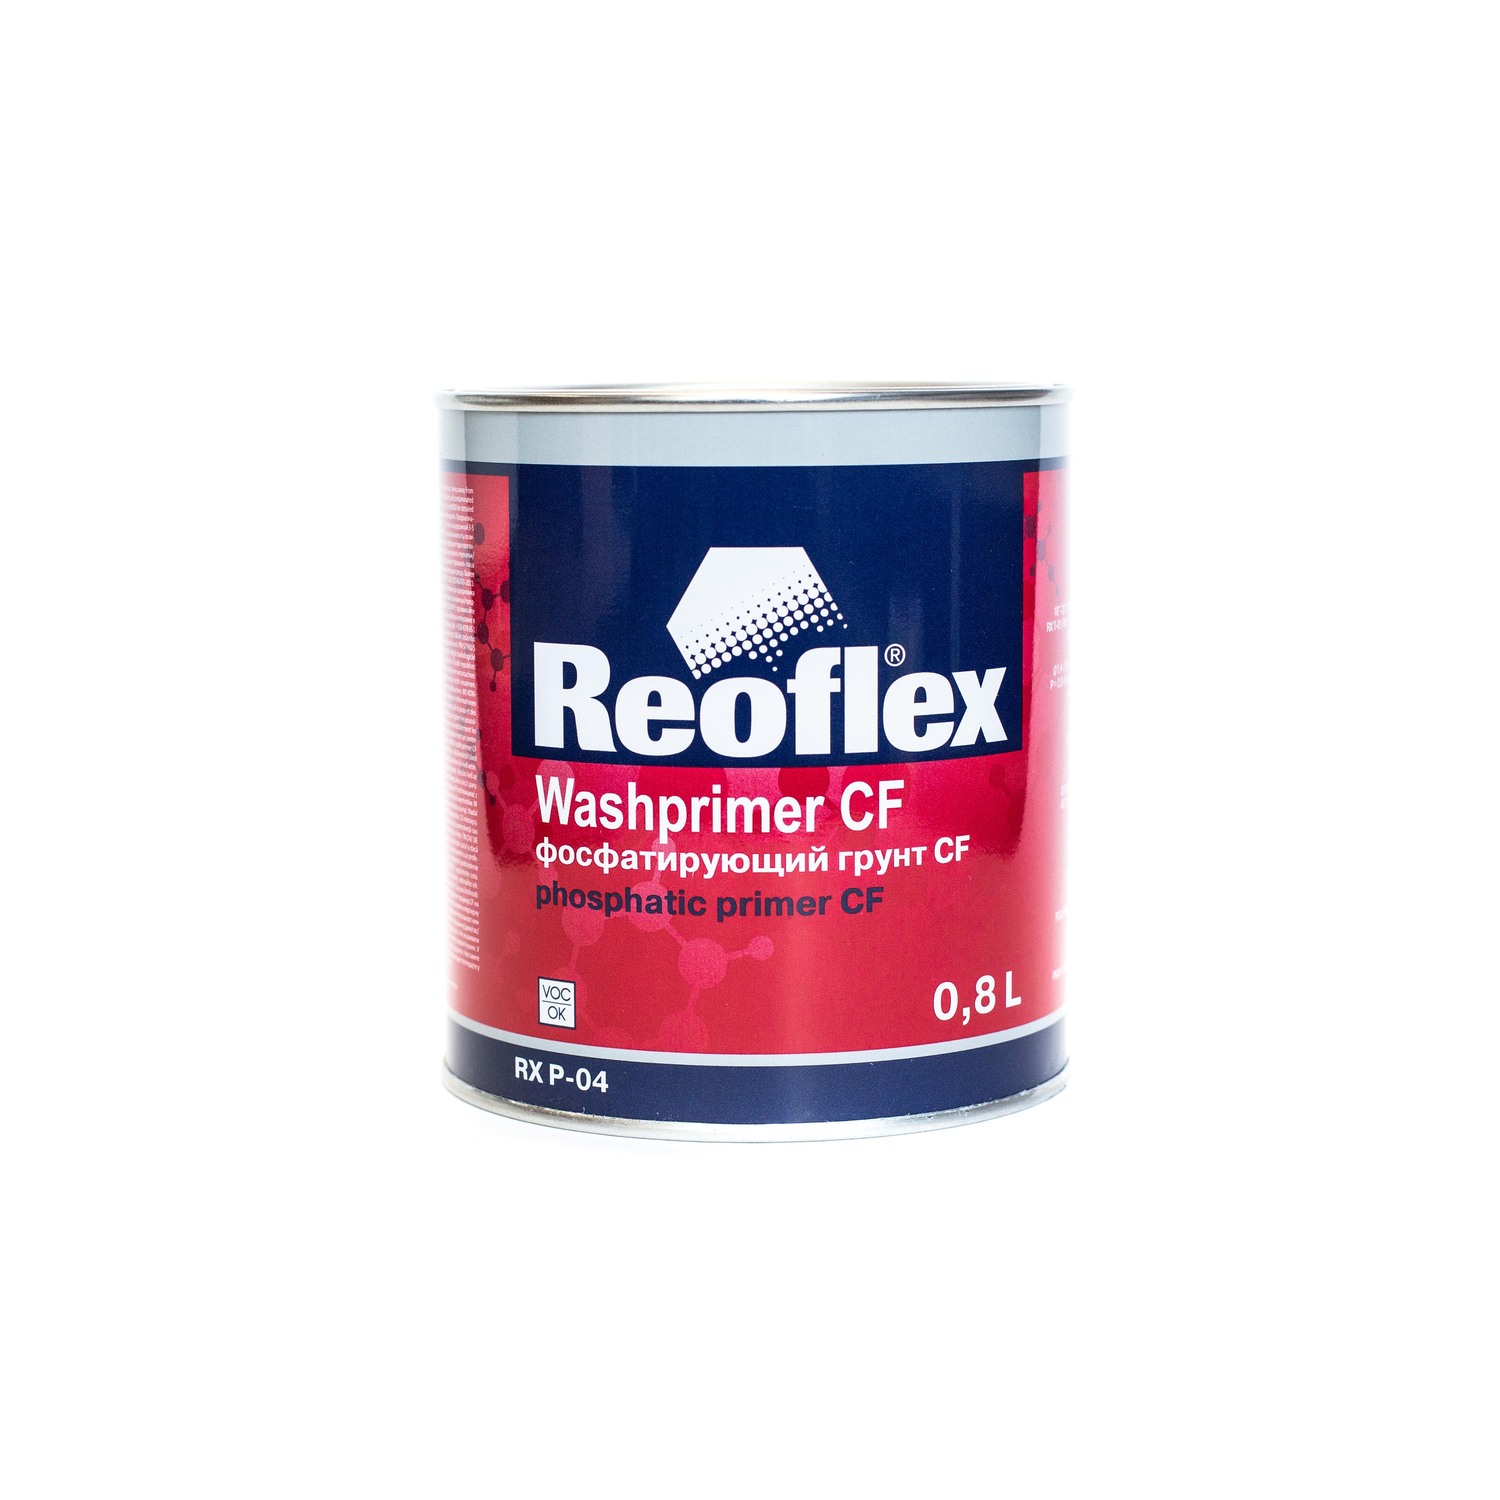 Reoflex Грунт 1К фосфатирующий (0,8л)